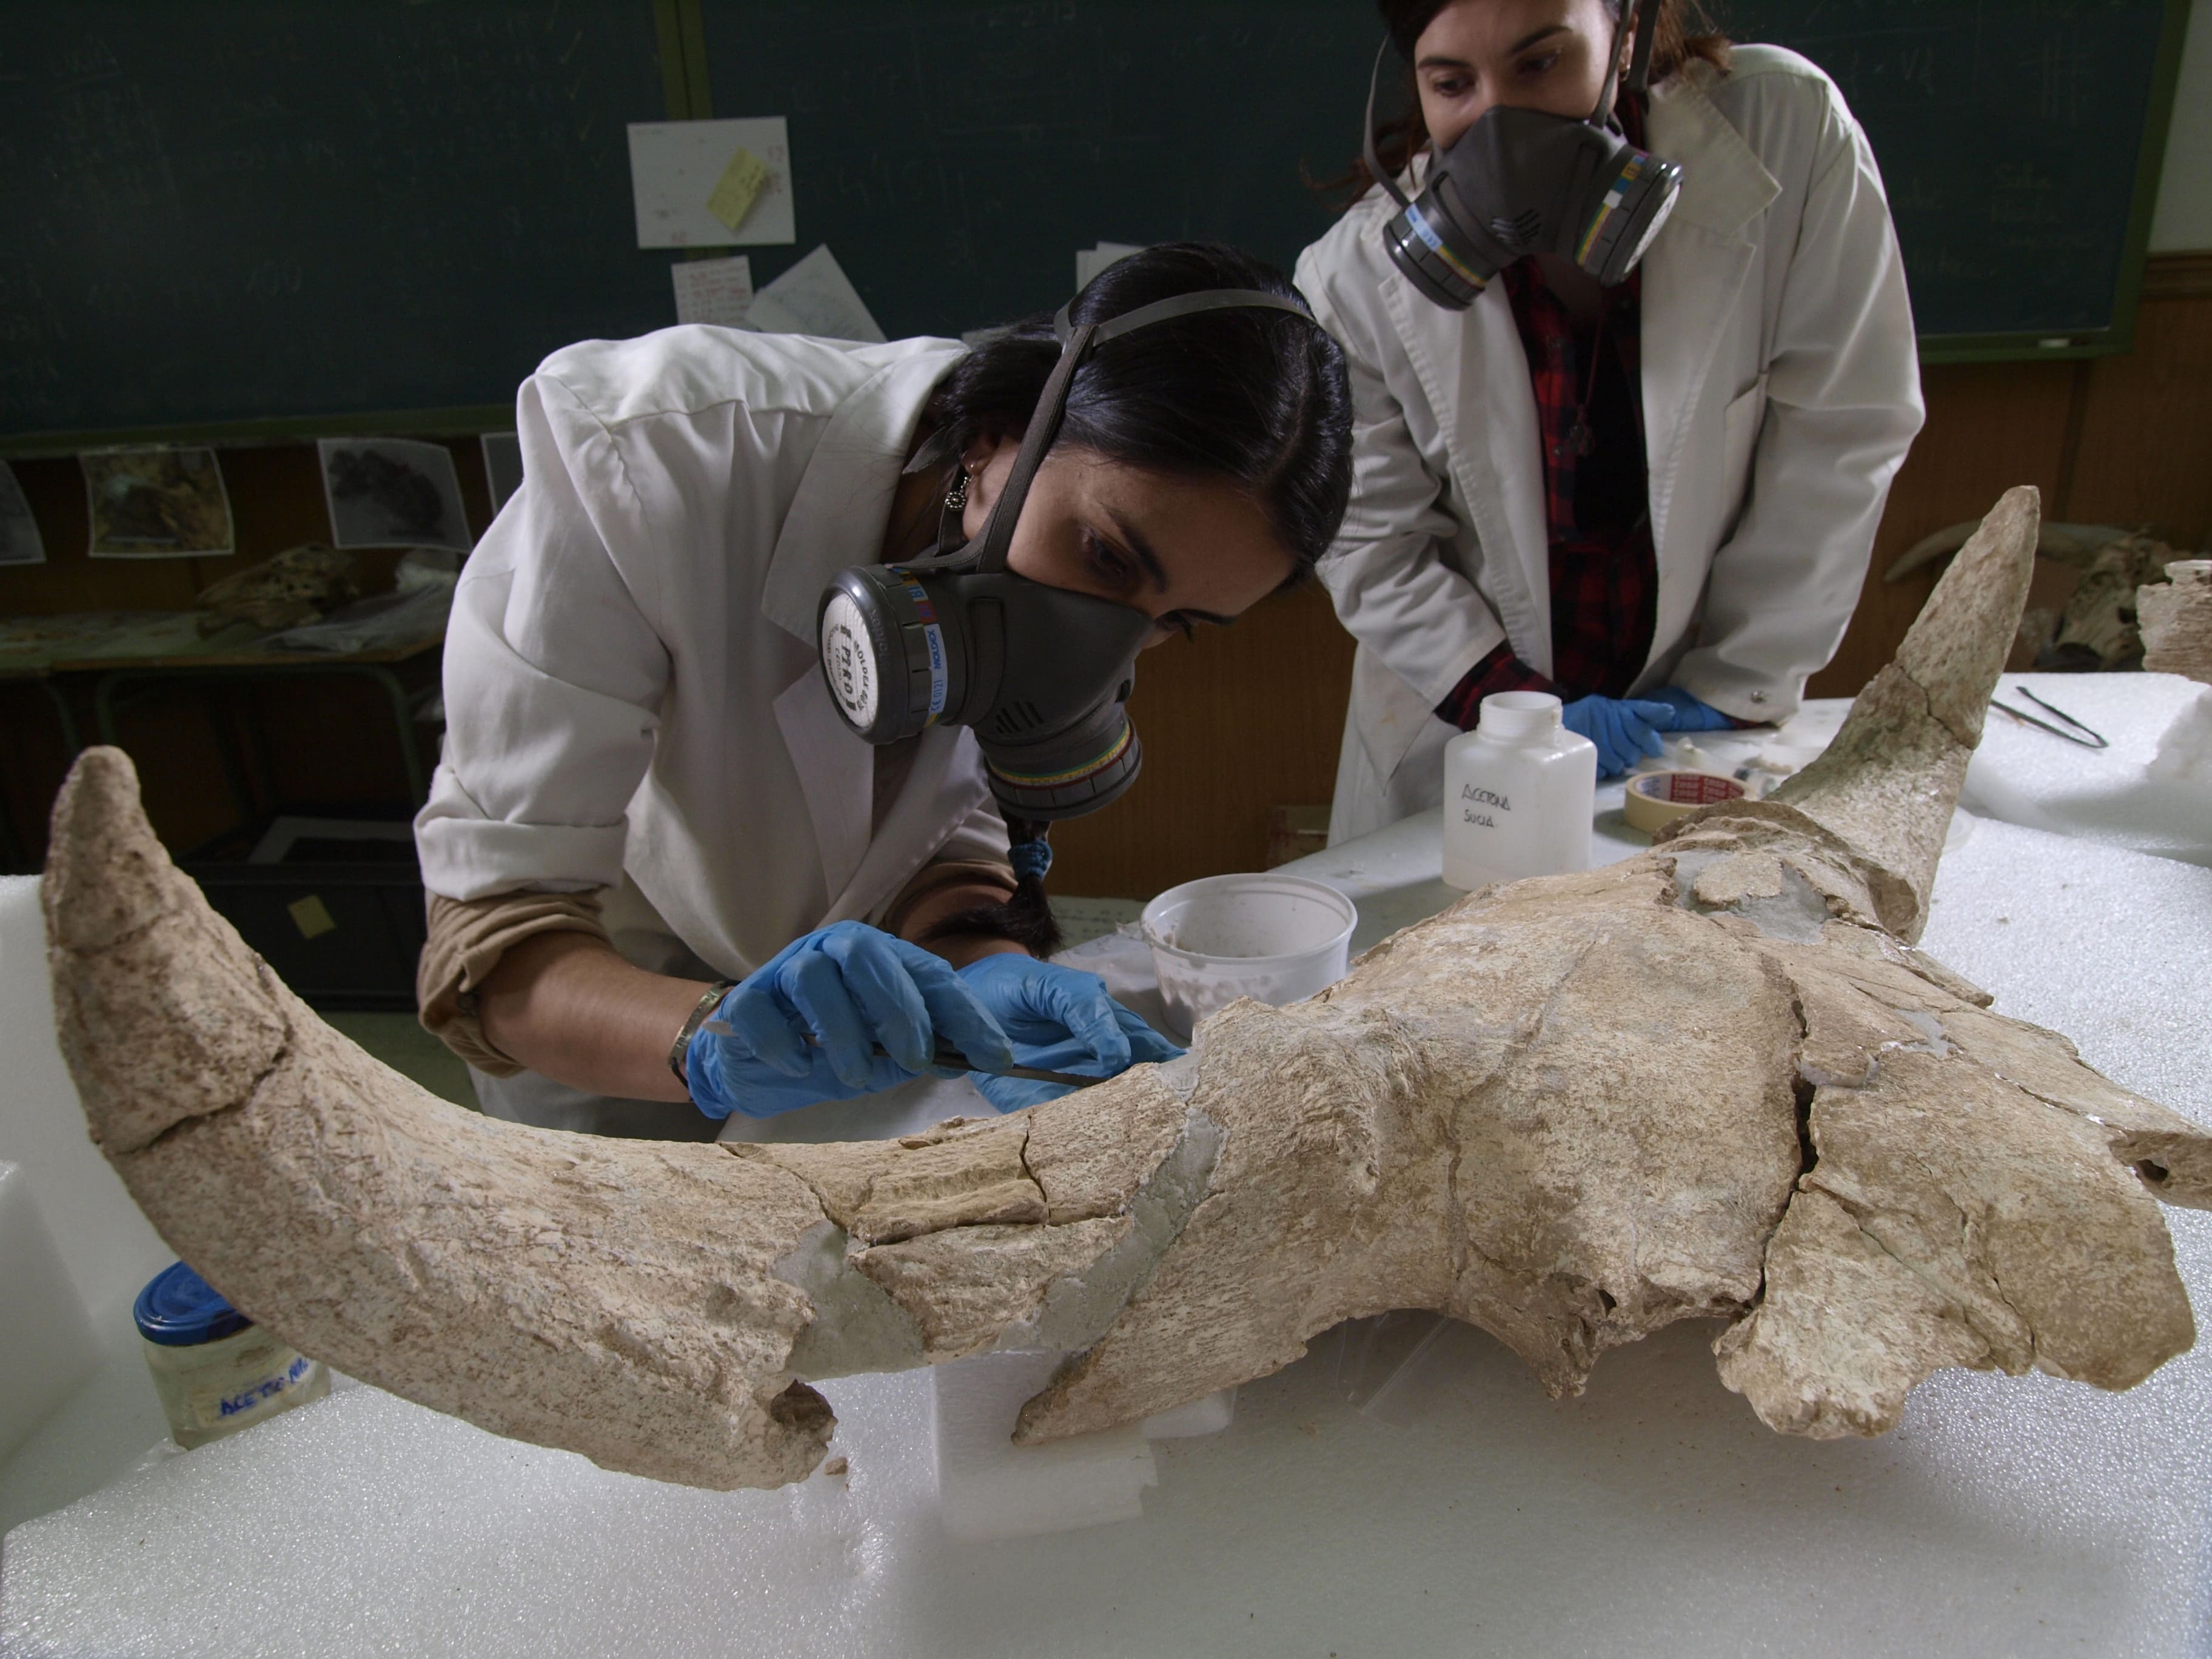 Crani cova neandertal / Javier Trueba, Museu de l'Evolució Humana